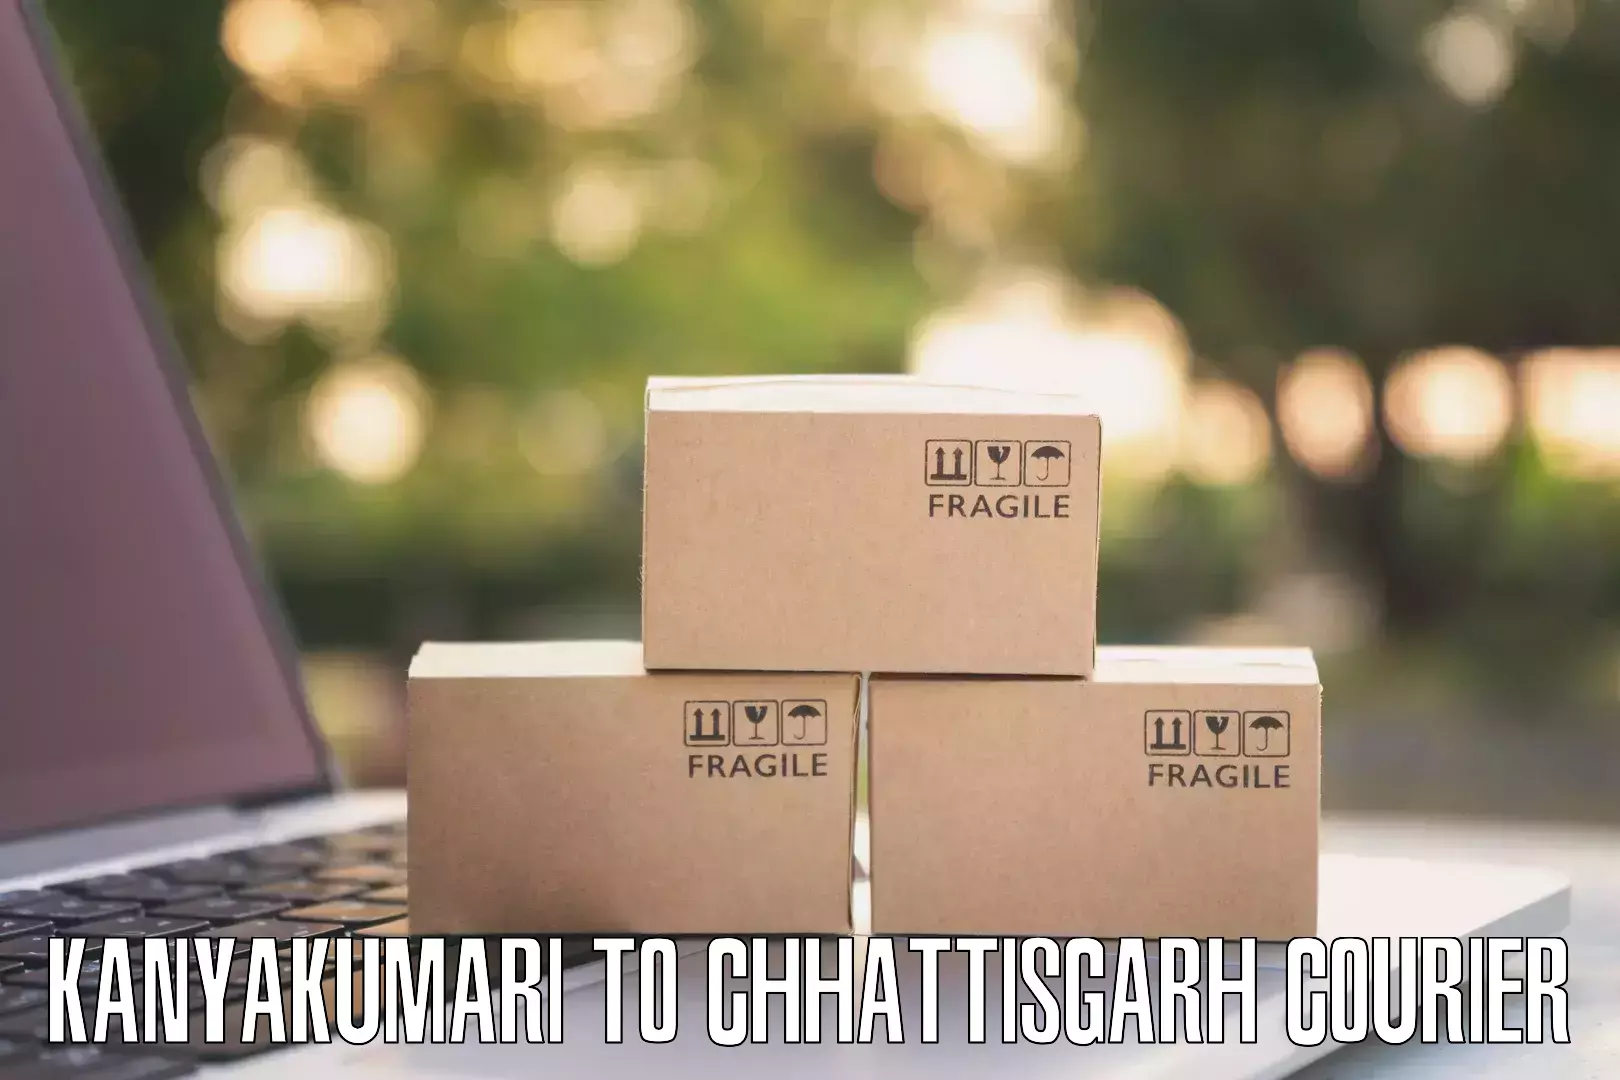 Fast shipping solutions Kanyakumari to Raigarh